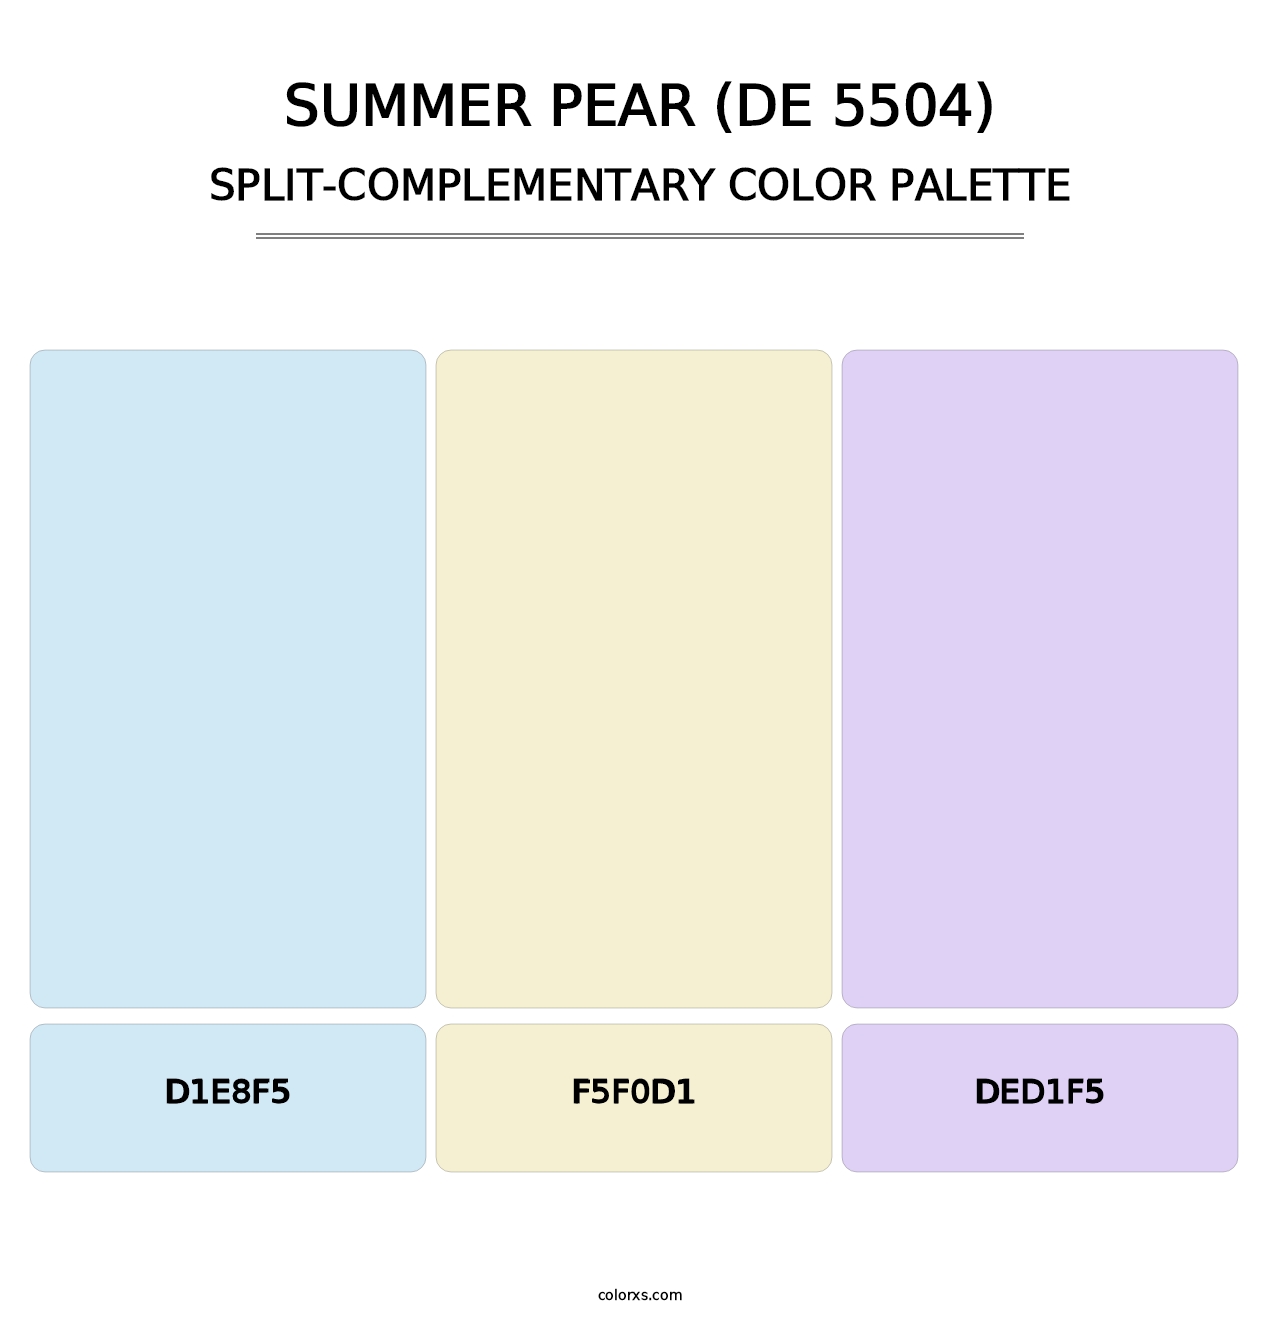 Summer Pear (DE 5504) - Split-Complementary Color Palette